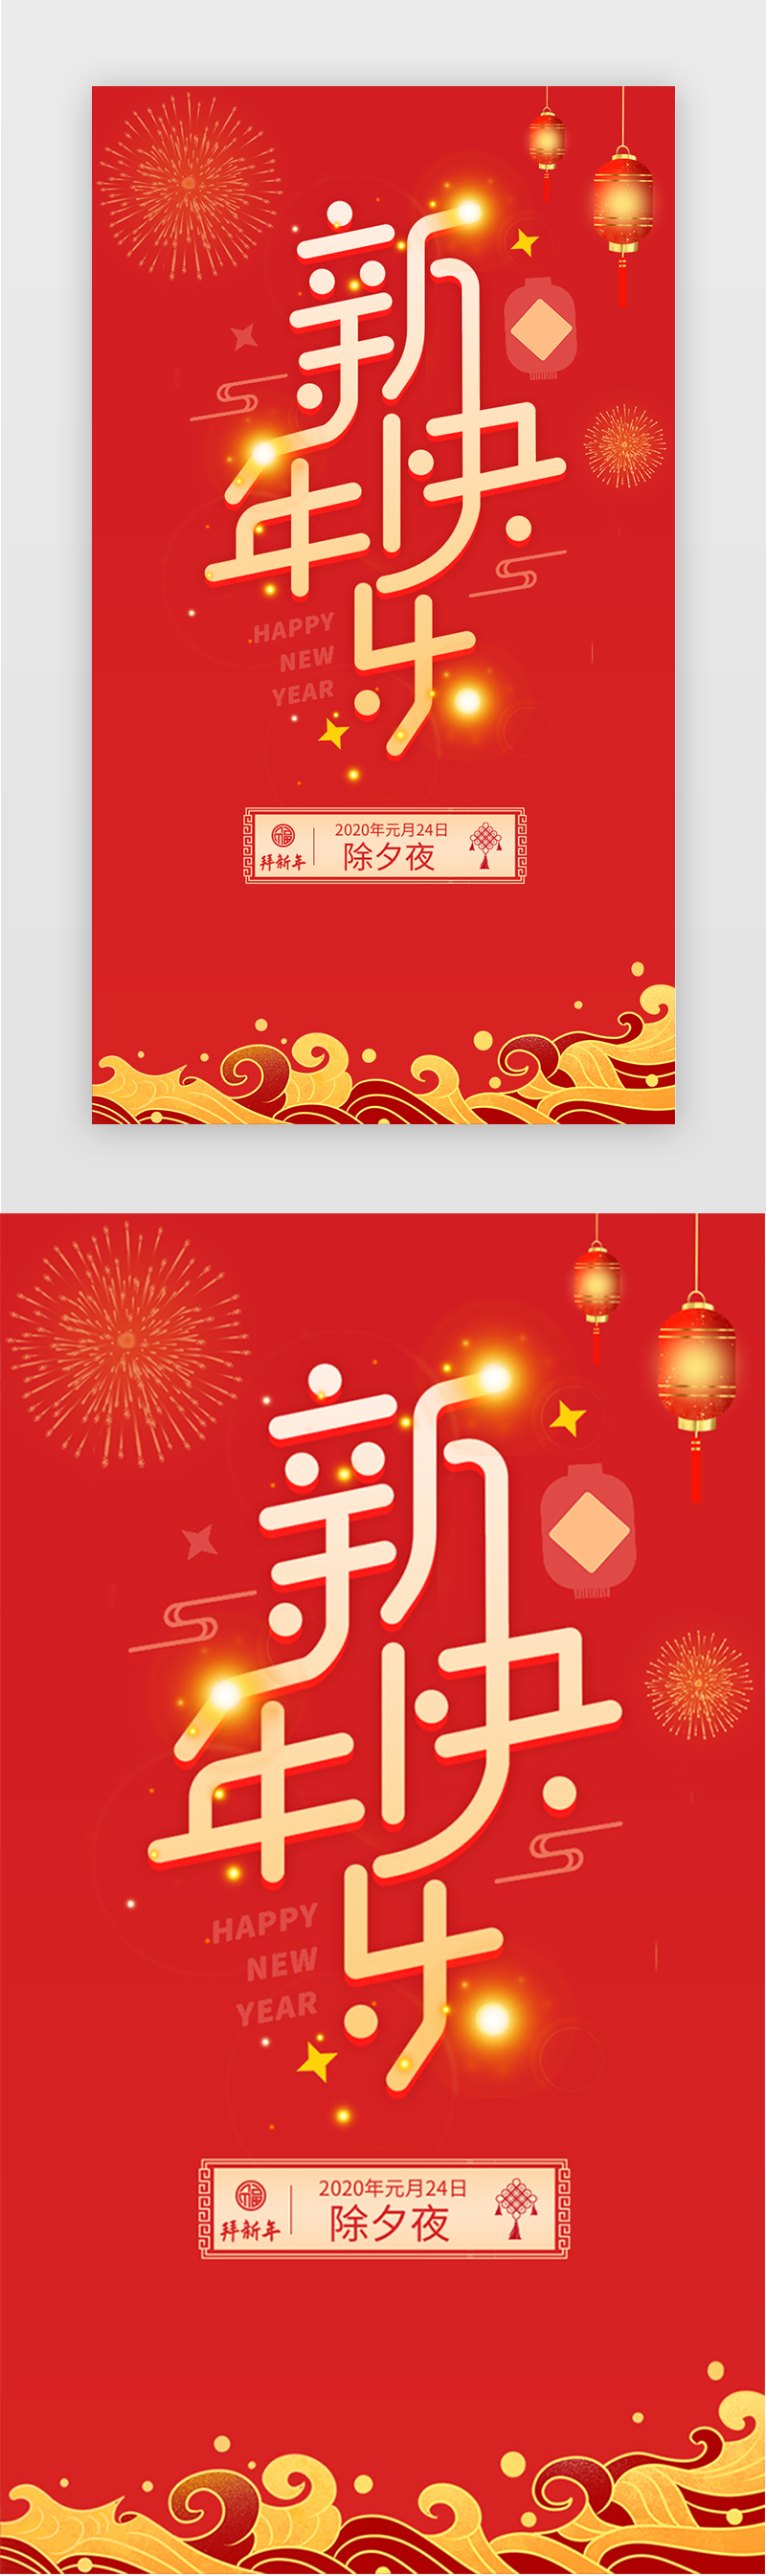 红色新年快乐除夕新年节日海报闪屏页图片